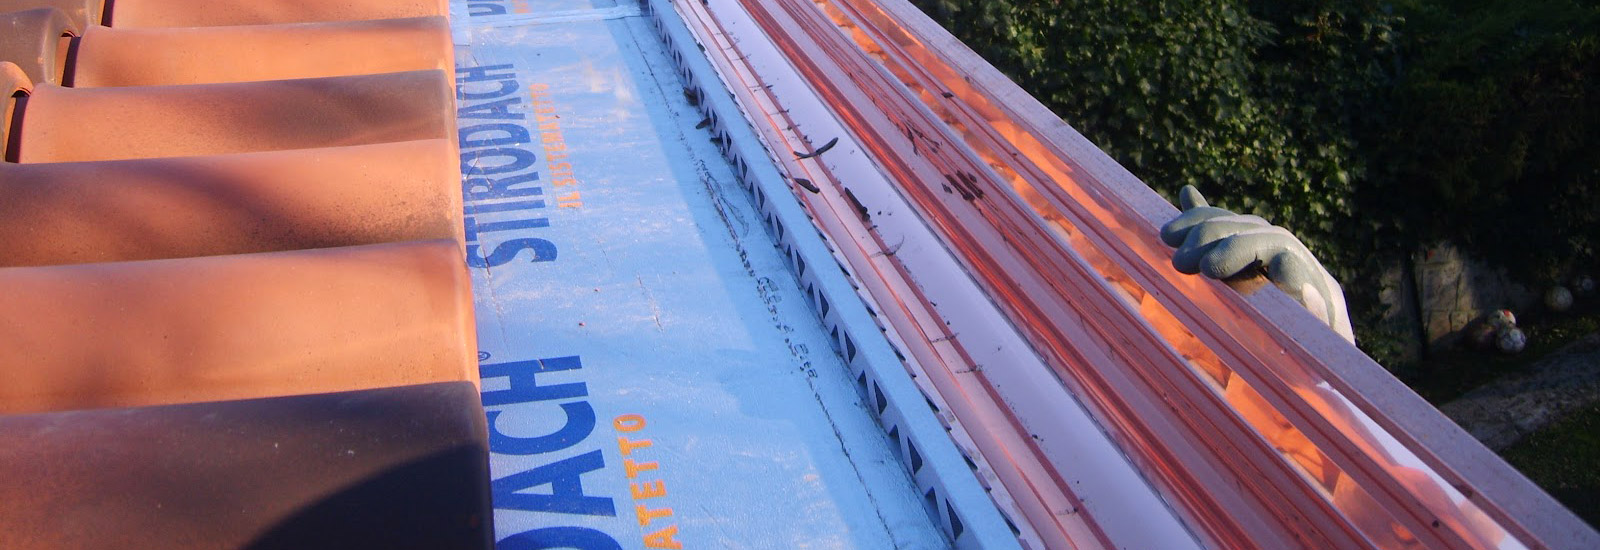 Realizzazione canali per tetti bergamo installazione pluviali e realizzazione opere di lattoneria bergamo